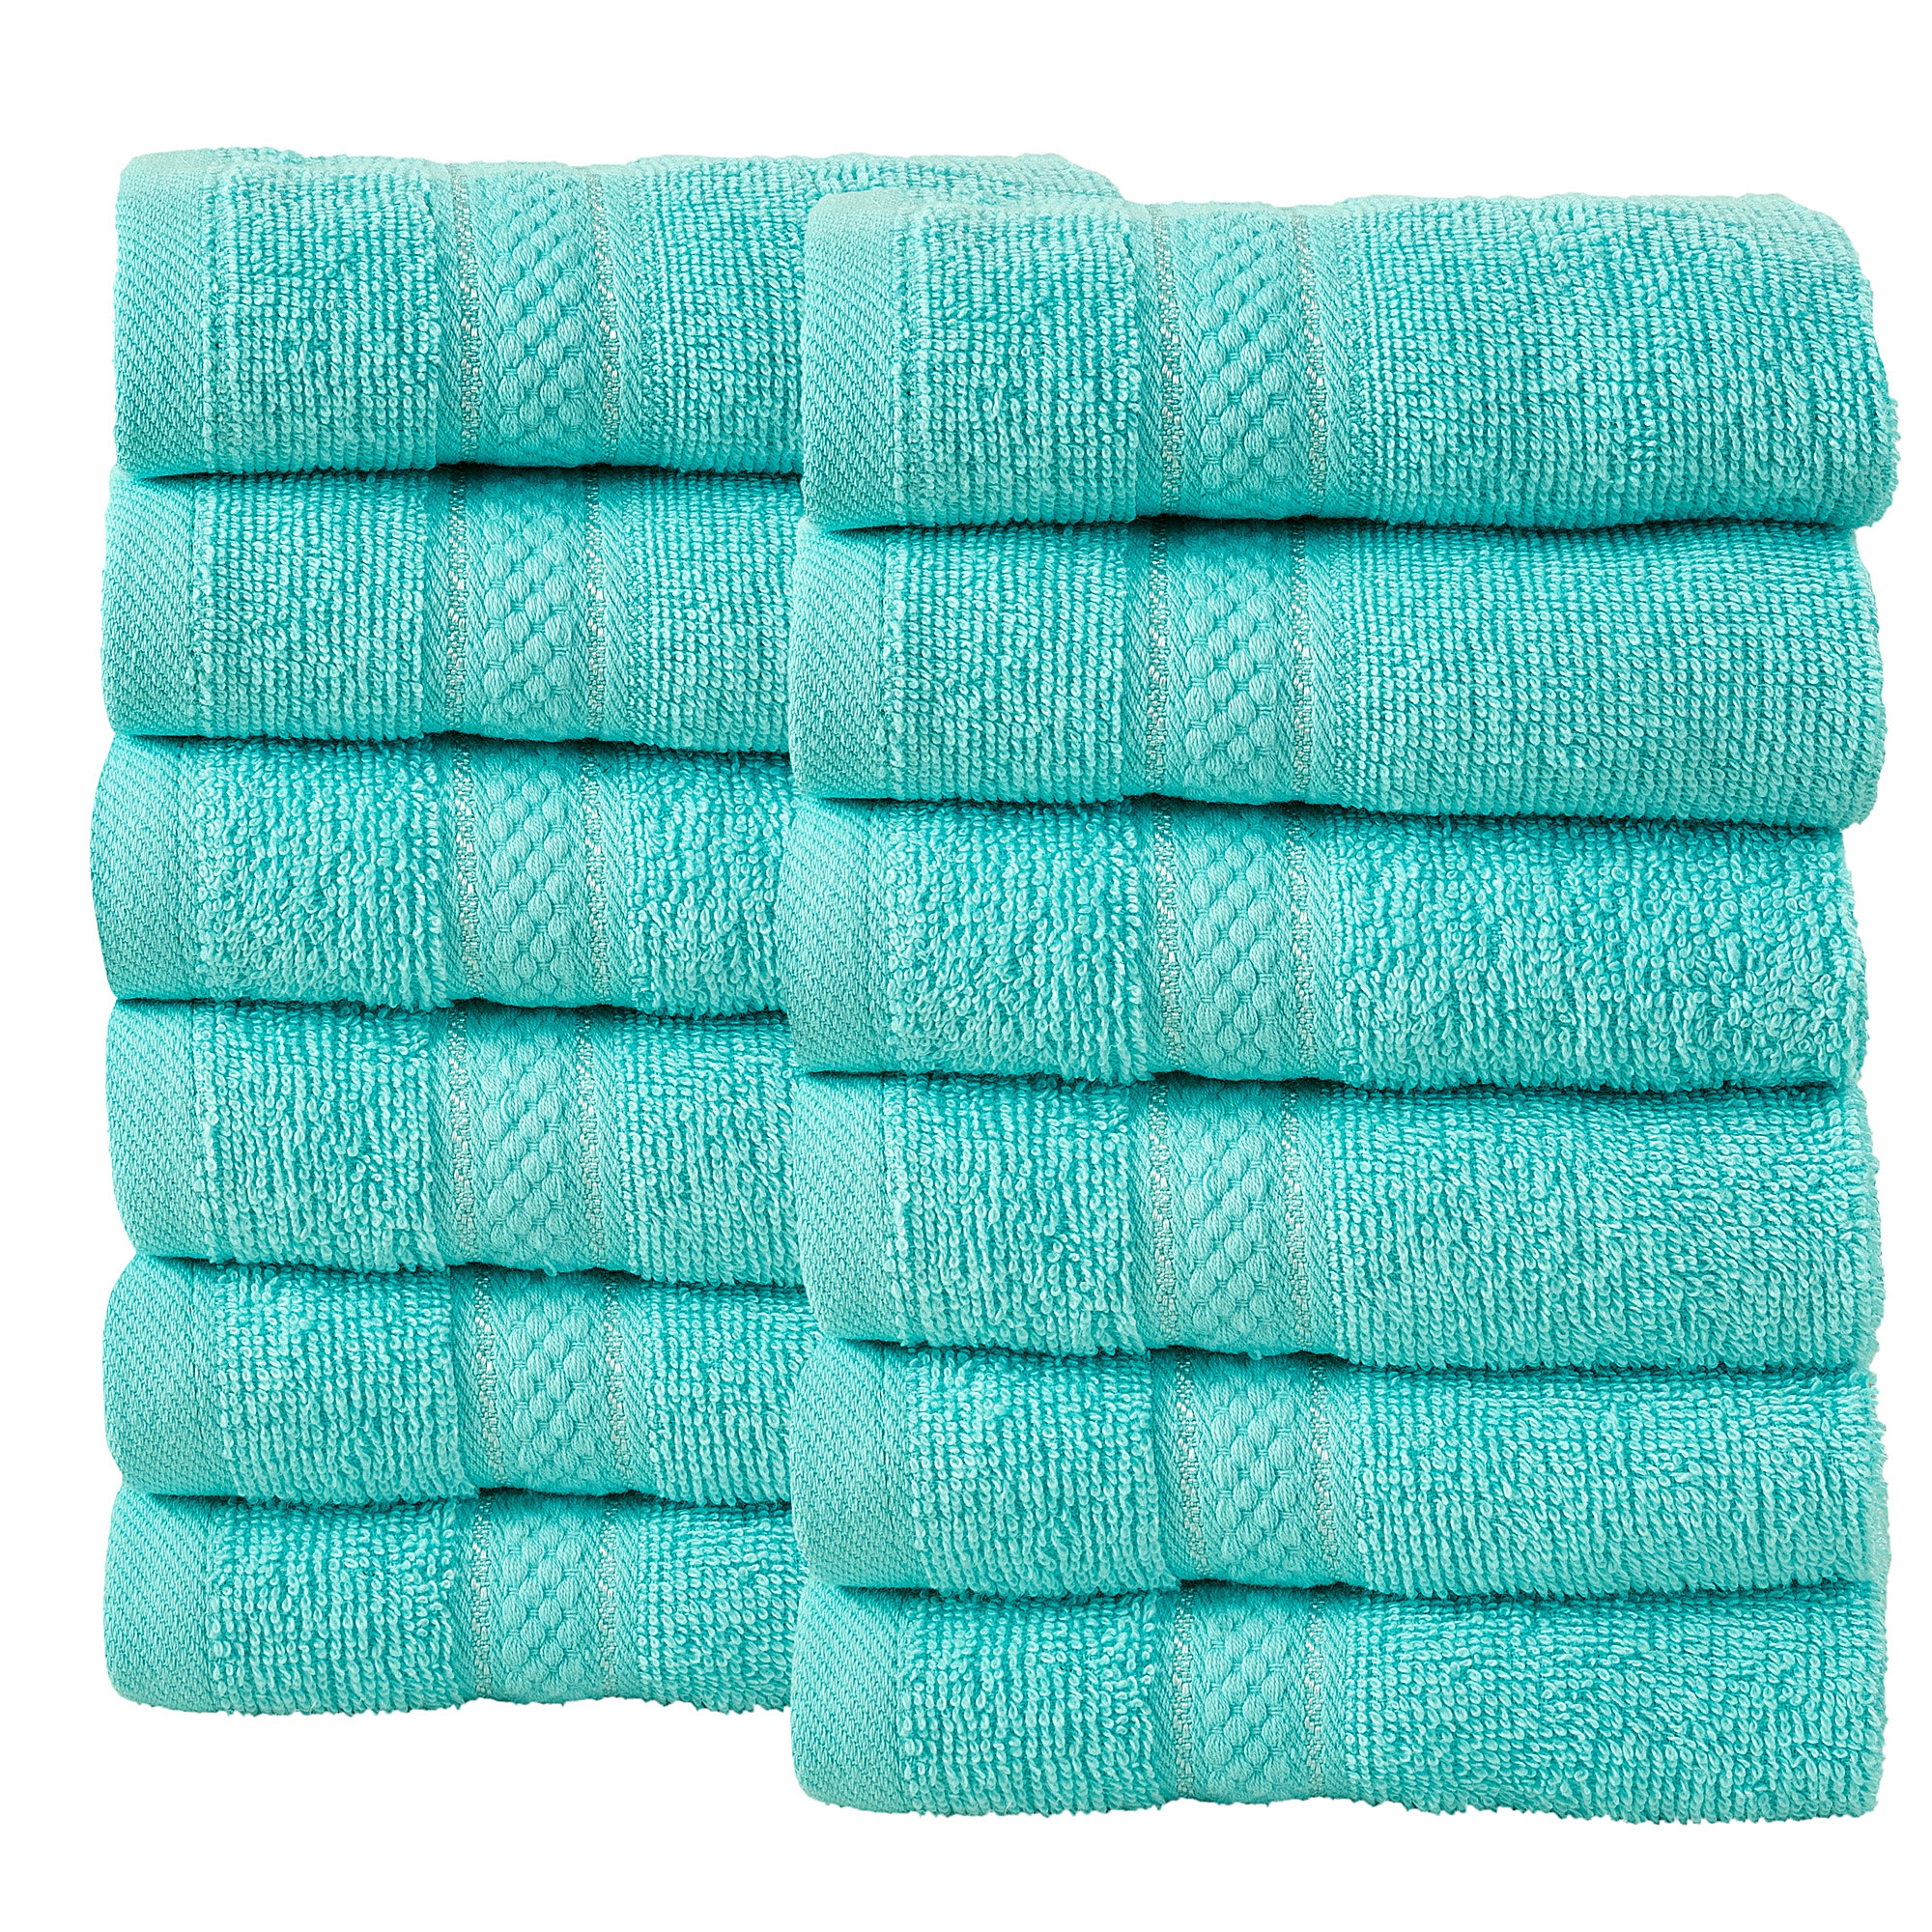 12 Pcs Face Cotton Towel Bale Set Turquoise Plain